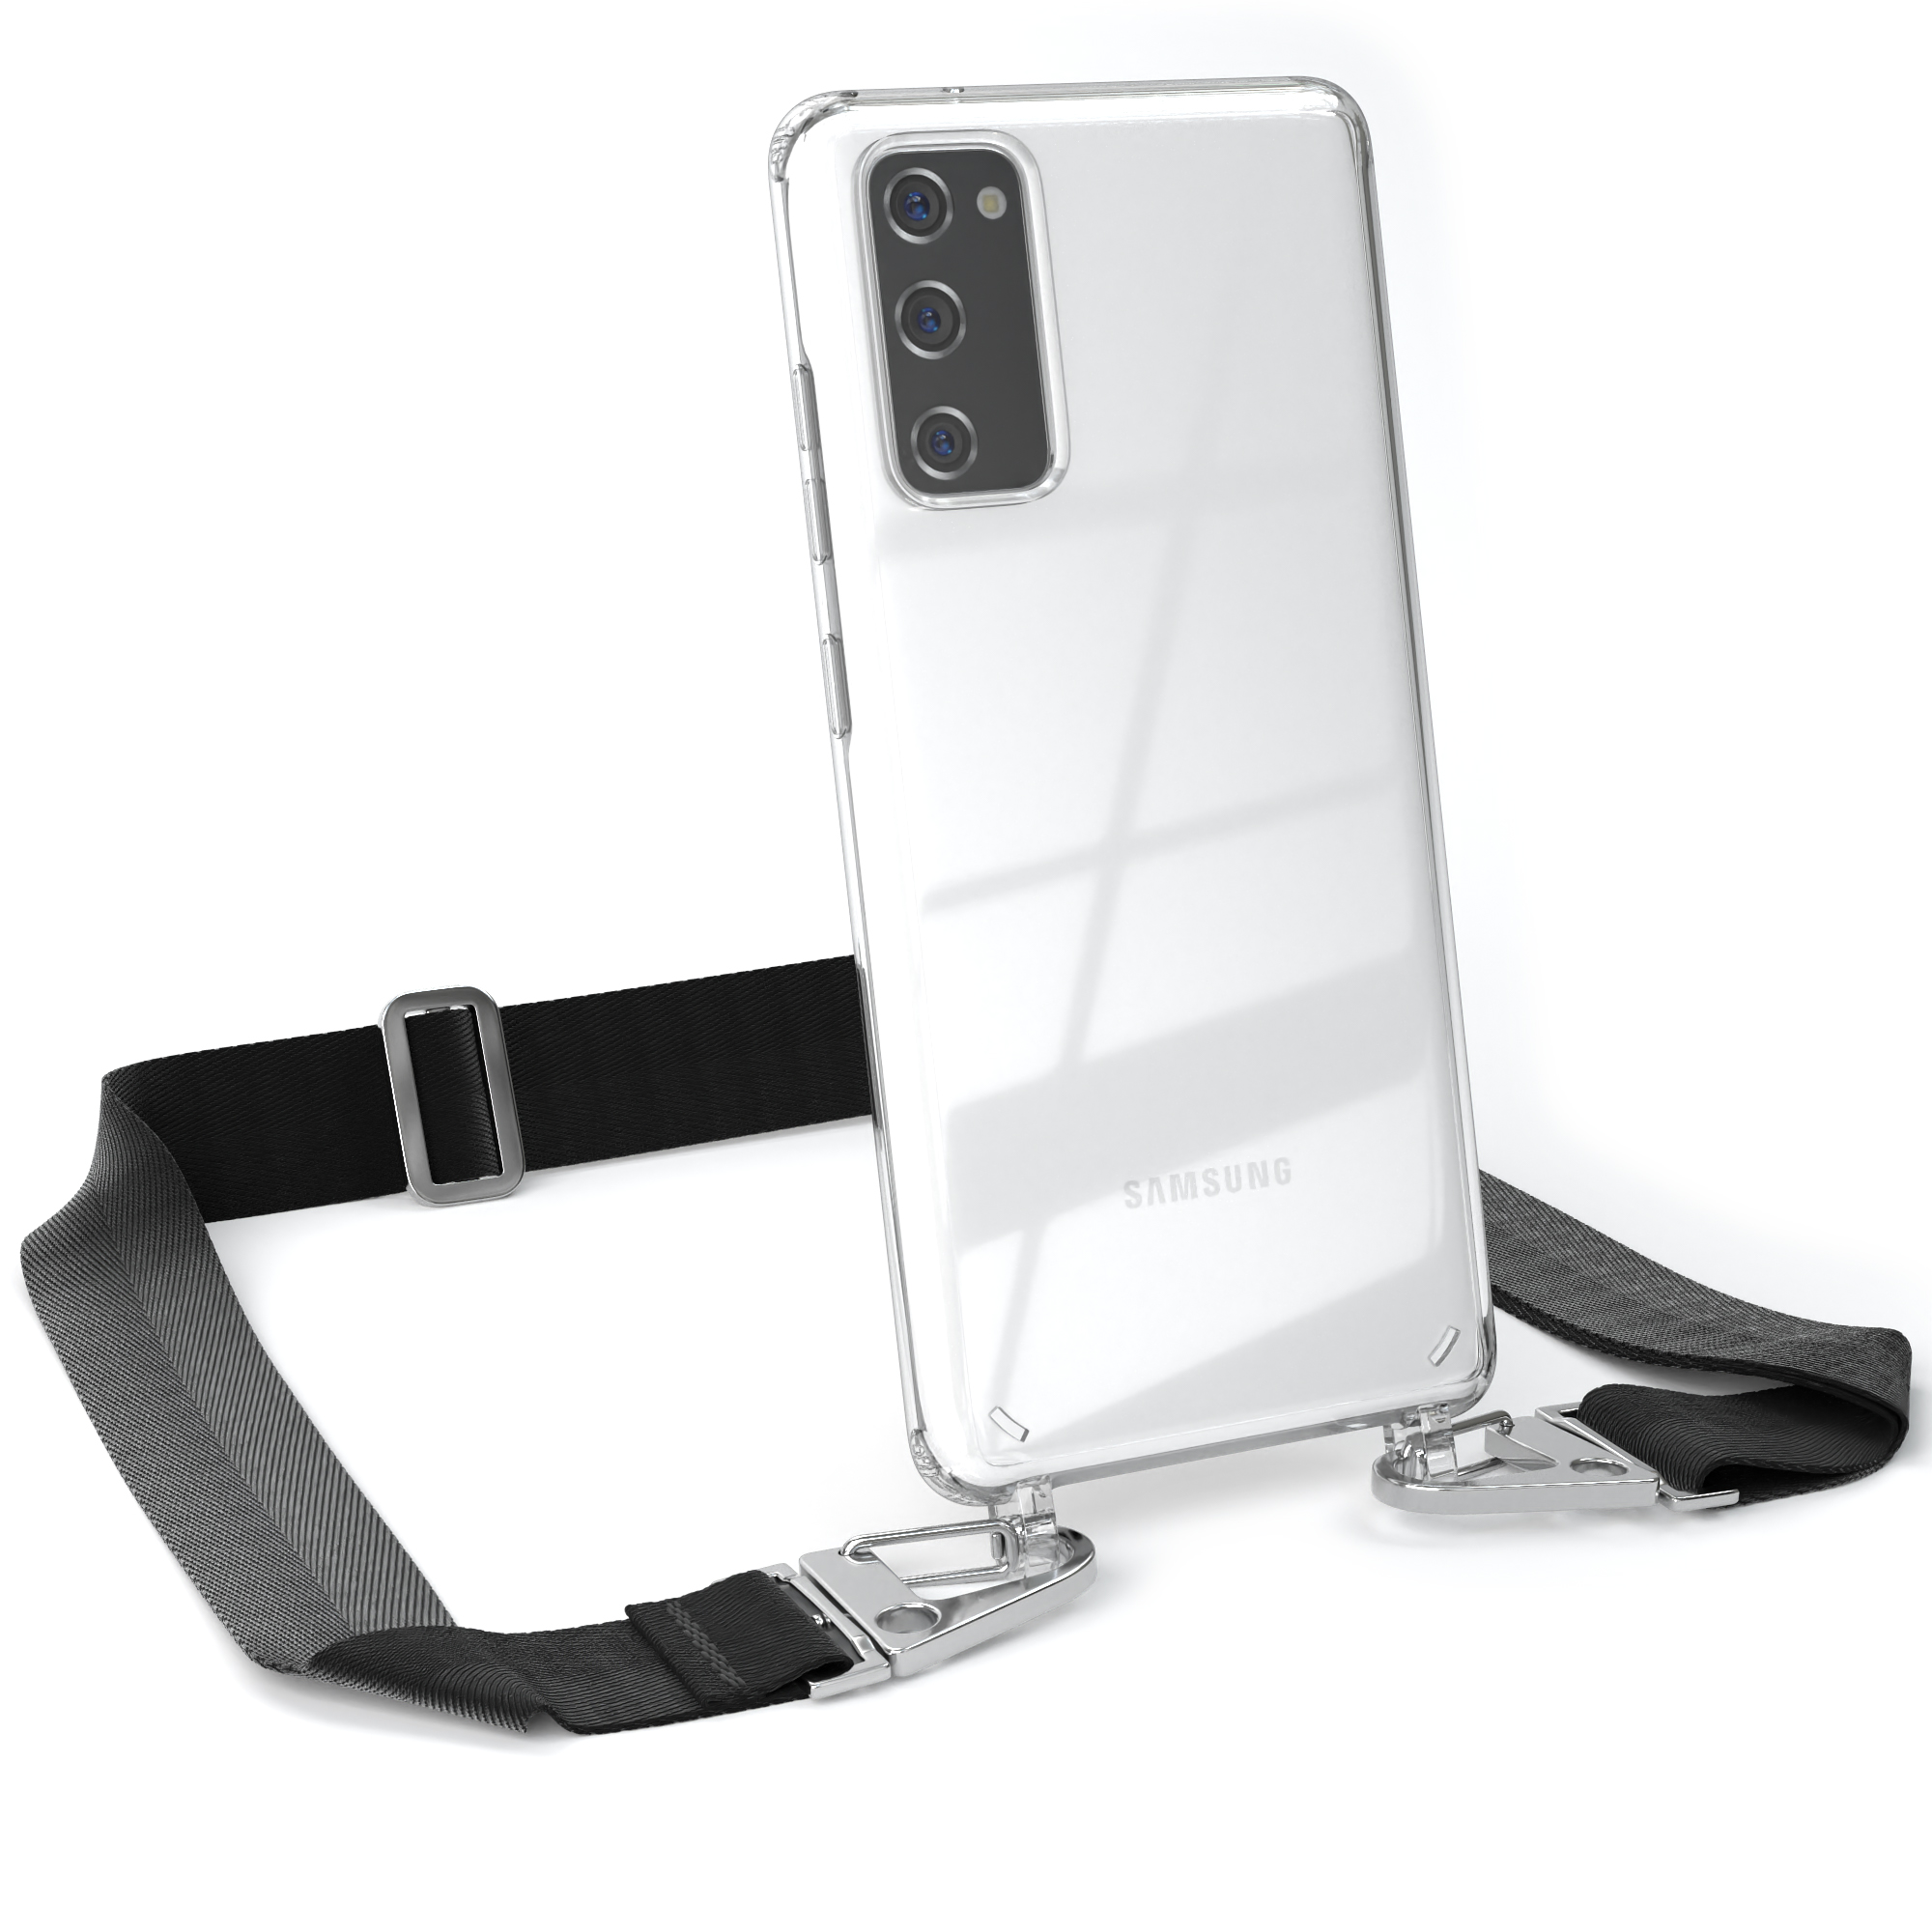 EAZY CASE Transparente Handyhülle Galaxy Umhängetasche, + Samsung, Schwarz / Silber S20, mit breiter Kordel Karabiner